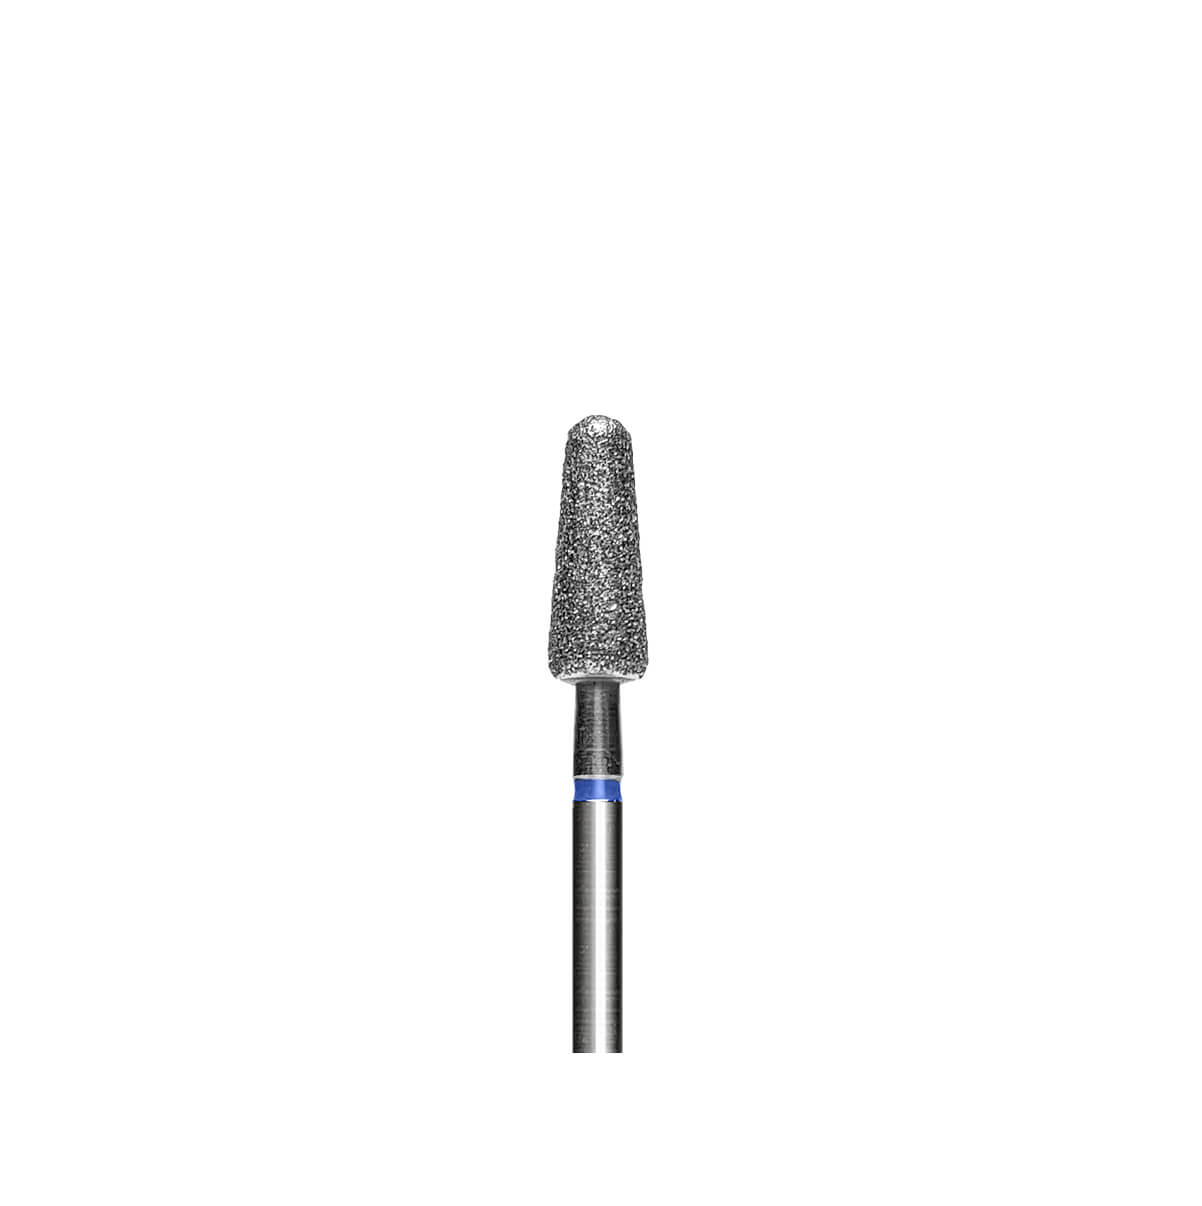 Алмазная насадка Lovely конус синяя, диаметр 4,5 мм* (средняя зернистость) 